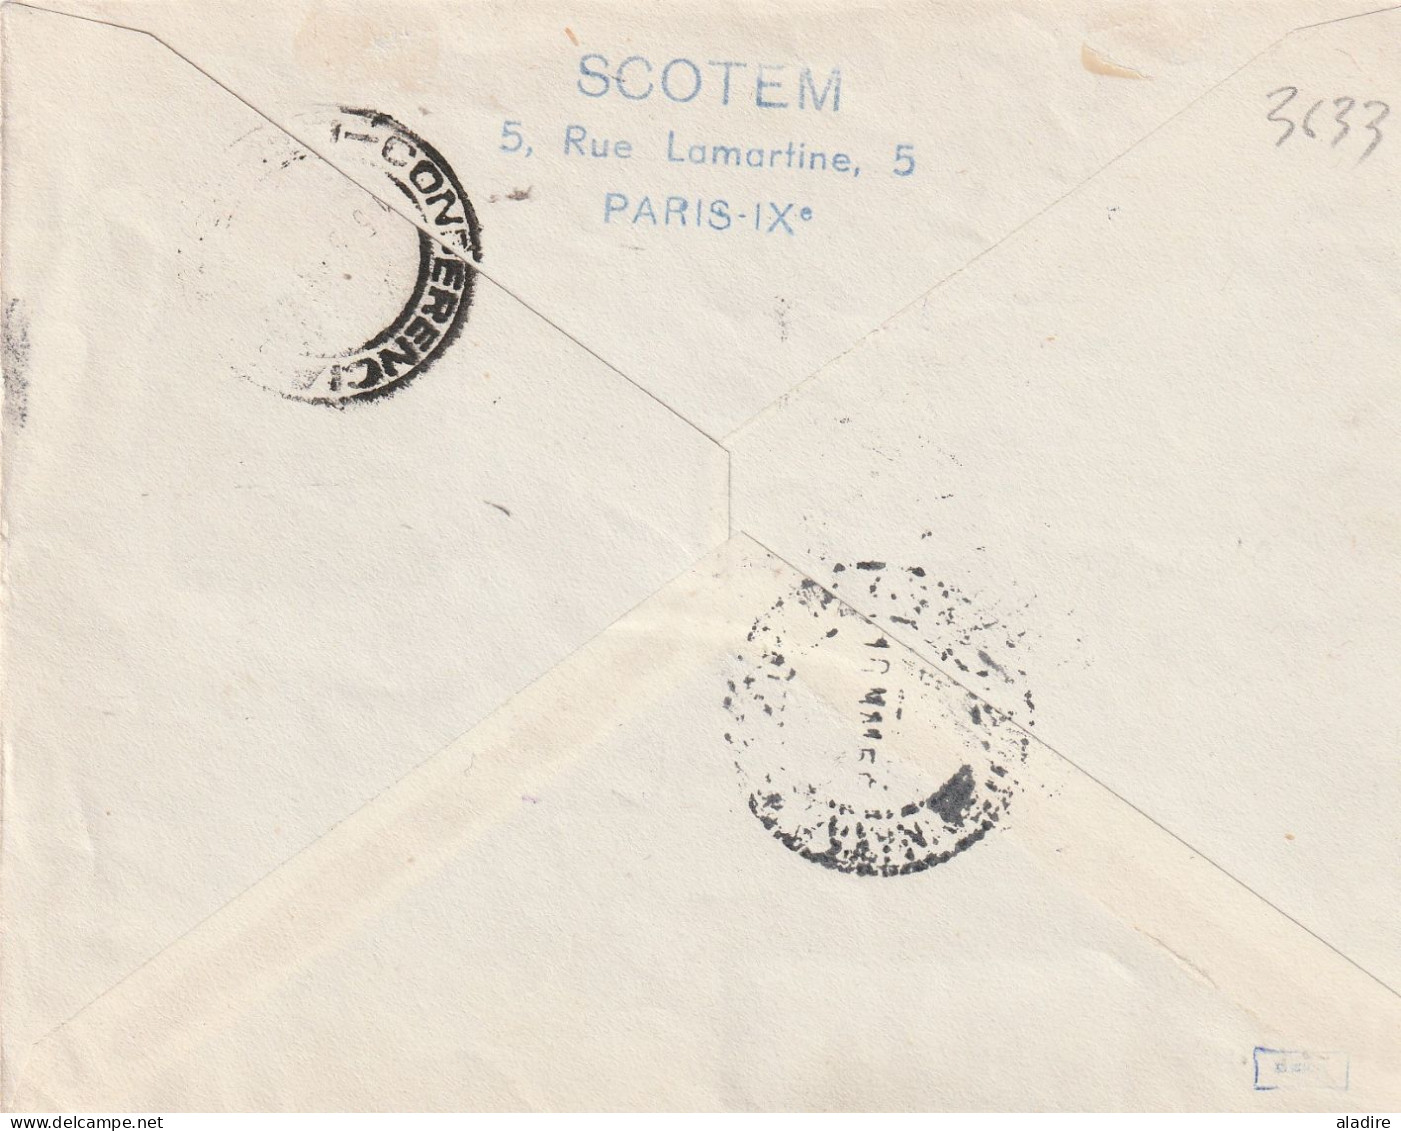 1944 /1958 - collection de 16 enveloppes PAR AVION - POSTE AERIENNE - nombreux timbres - 32 scans